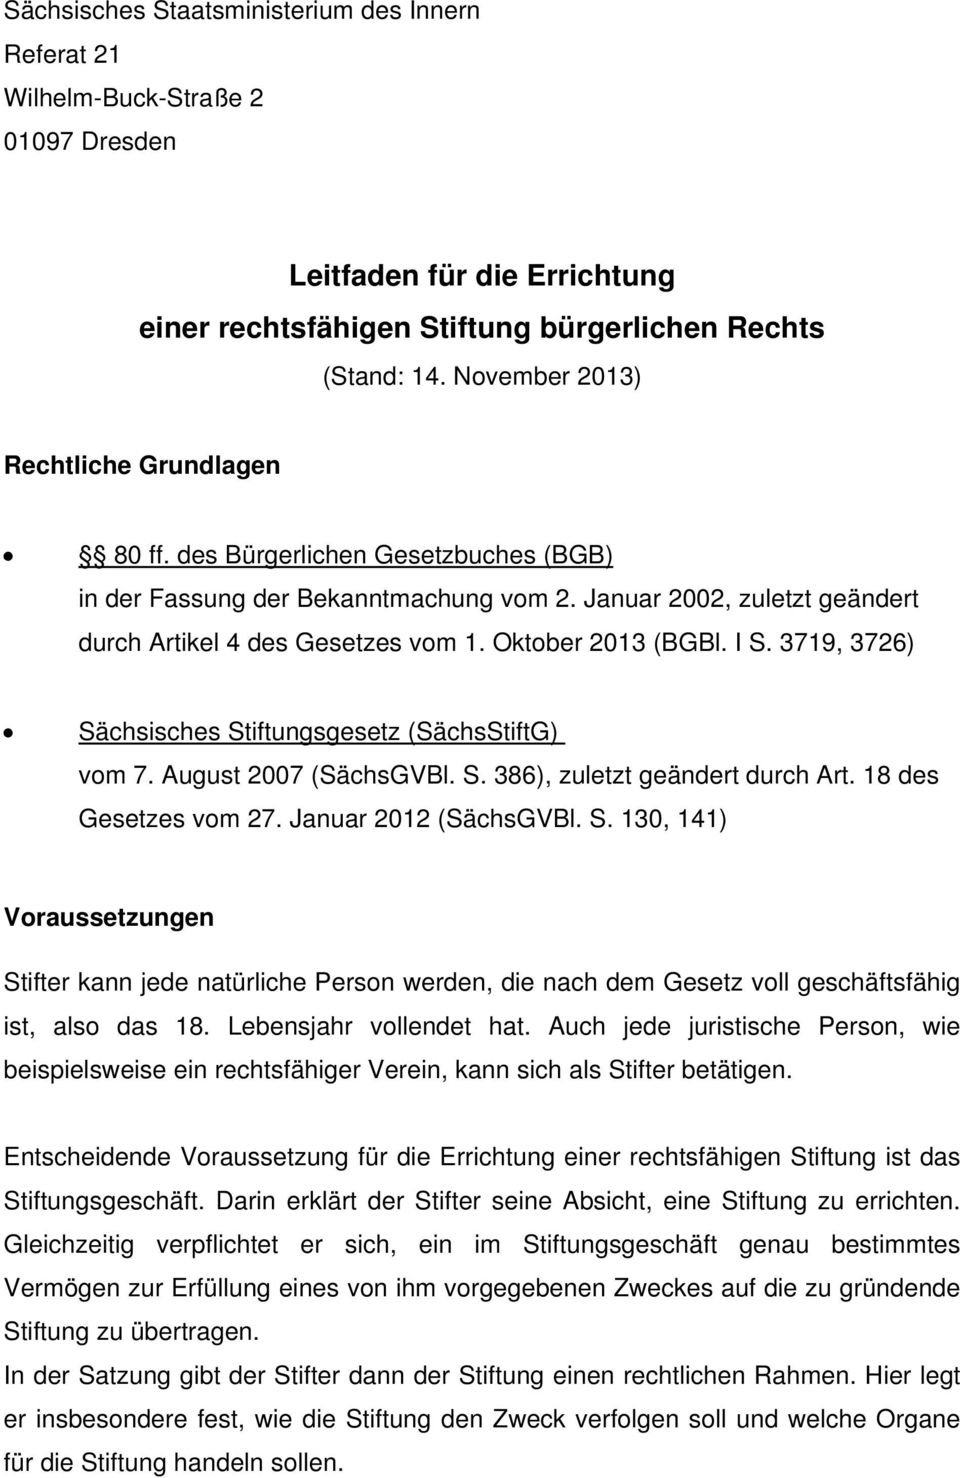 Oktober 2013 (BGBl. I S. 3719, 3726) Sächsisches Stiftungsgesetz (SächsStiftG) vom 7. August 2007 (SächsGVBl. S. 386), zuletzt geändert durch Art. 18 des Gesetzes vom 27. Januar 2012 (SächsGVBl. S. 130, 141) Voraussetzungen Stifter kann jede natürliche Person werden, die nach dem Gesetz voll geschäftsfähig ist, also das 18.